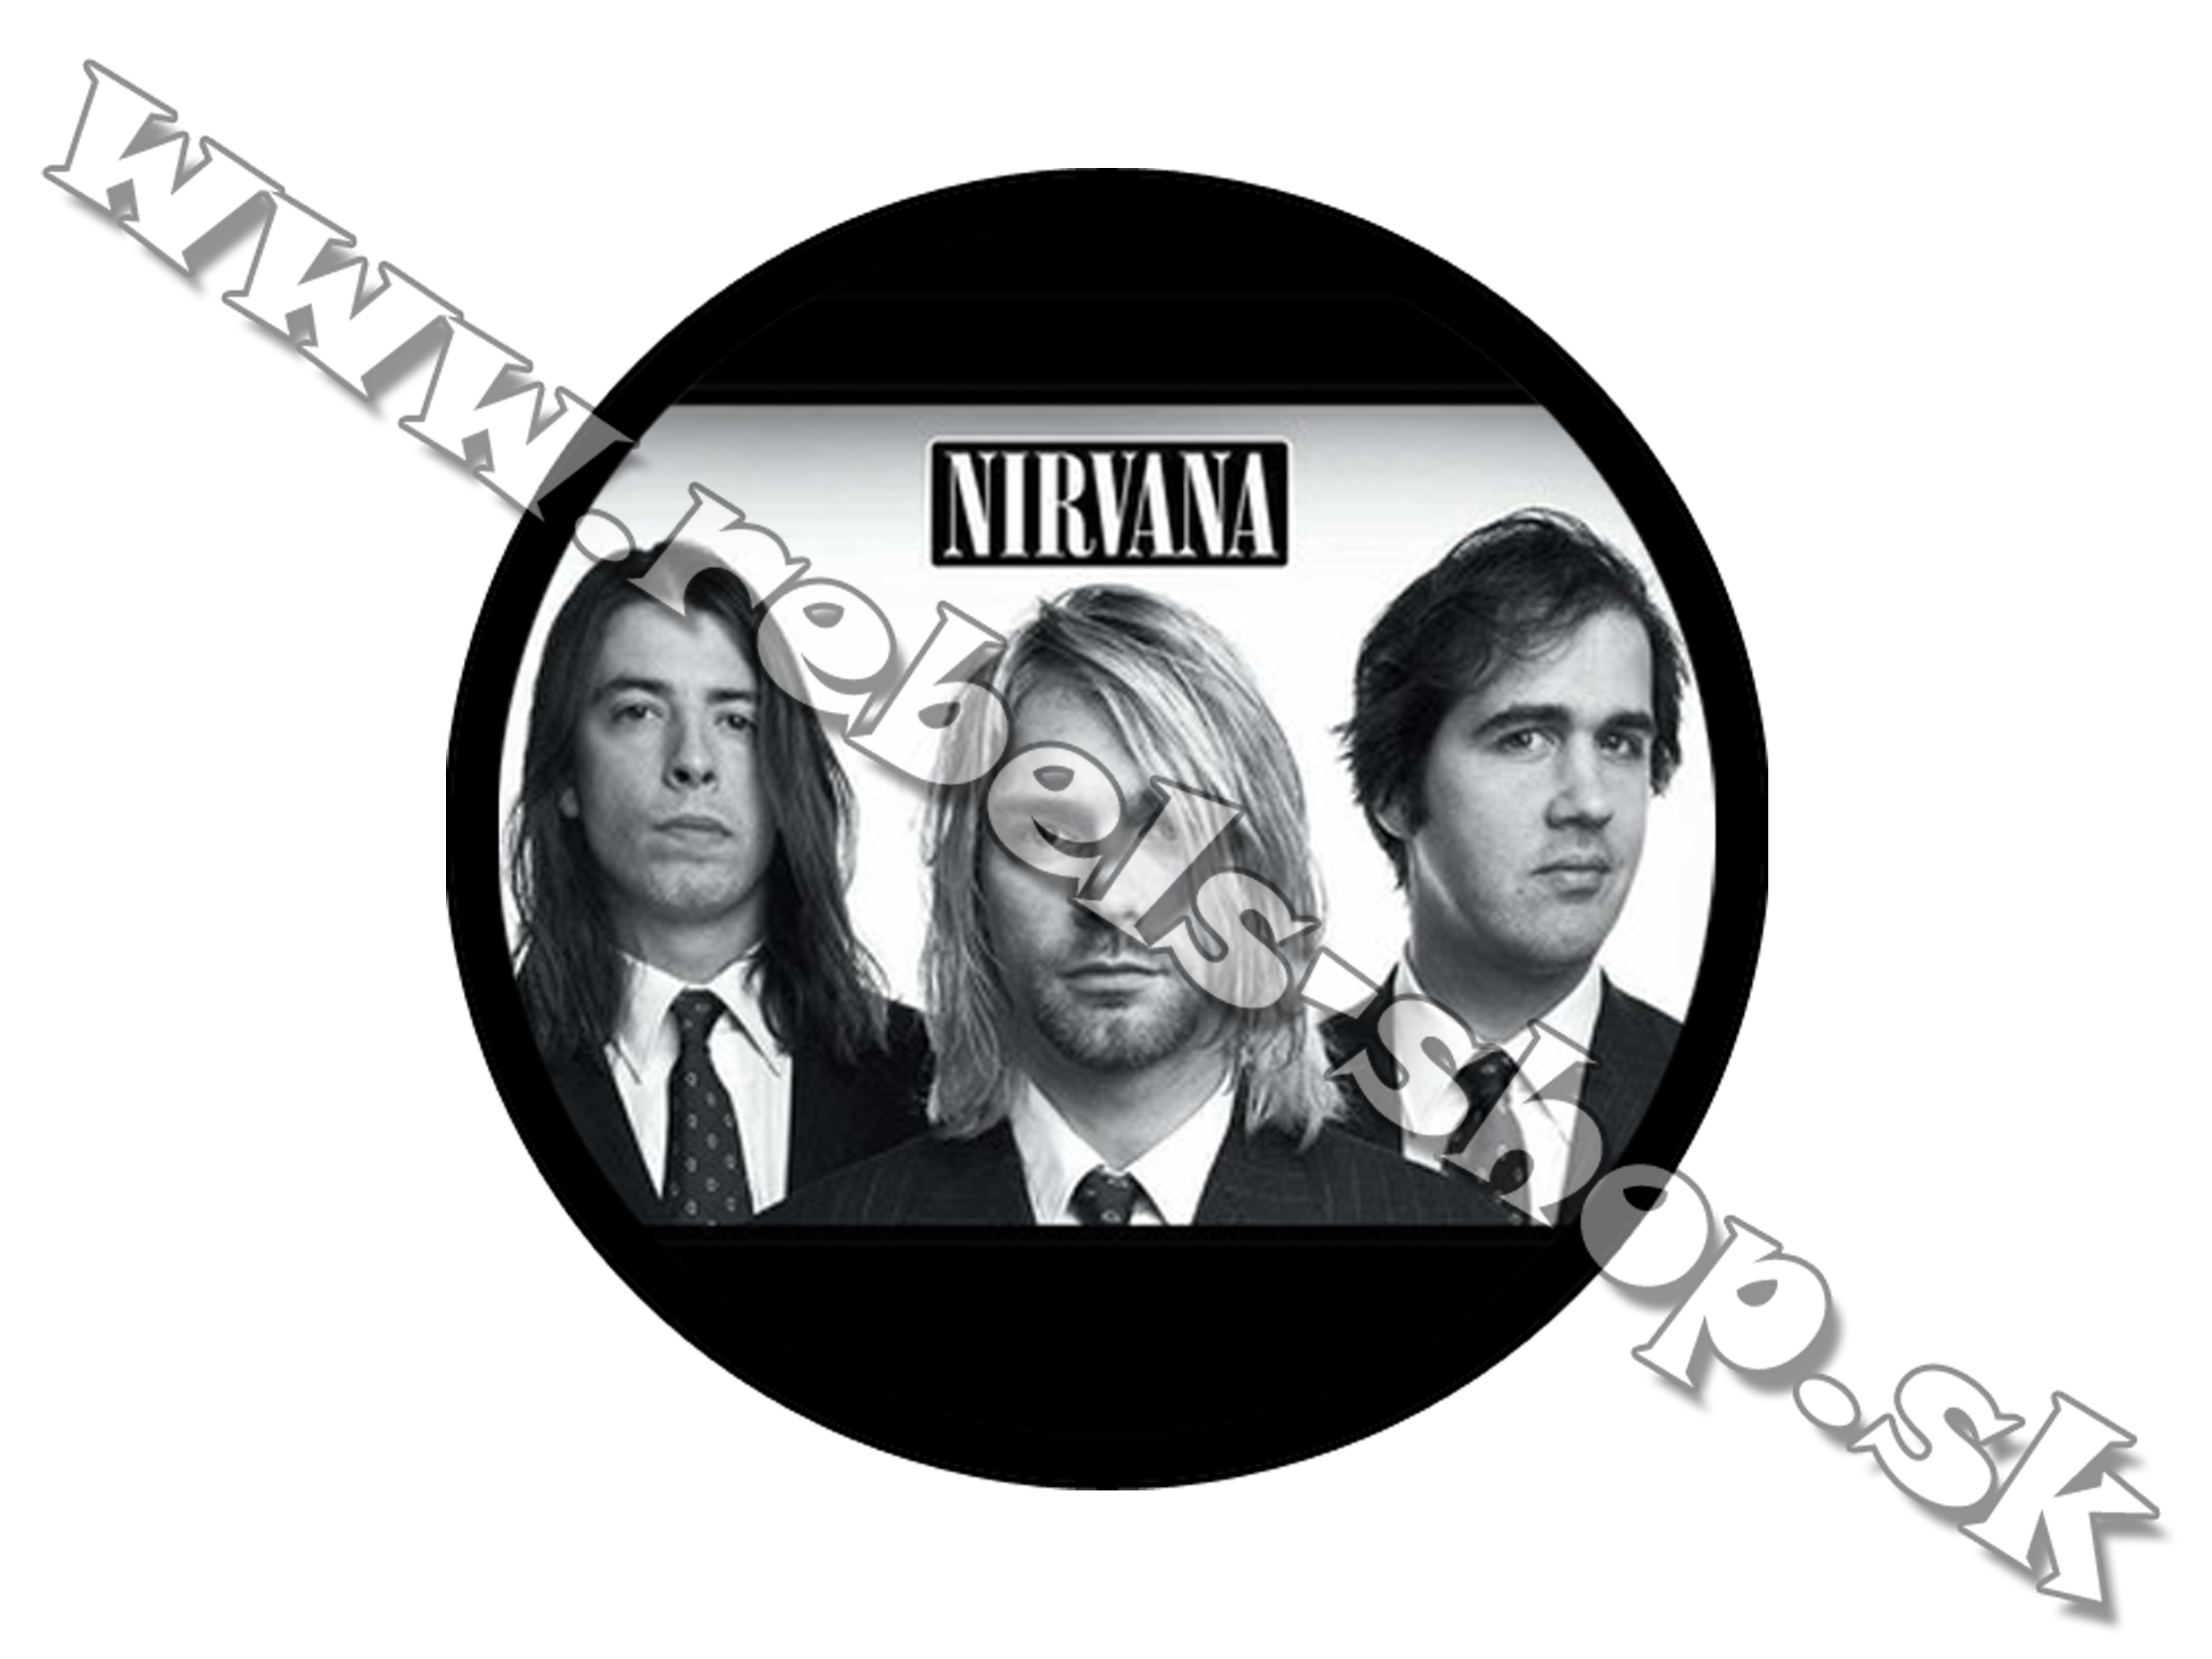 Odznak "Nirvana"